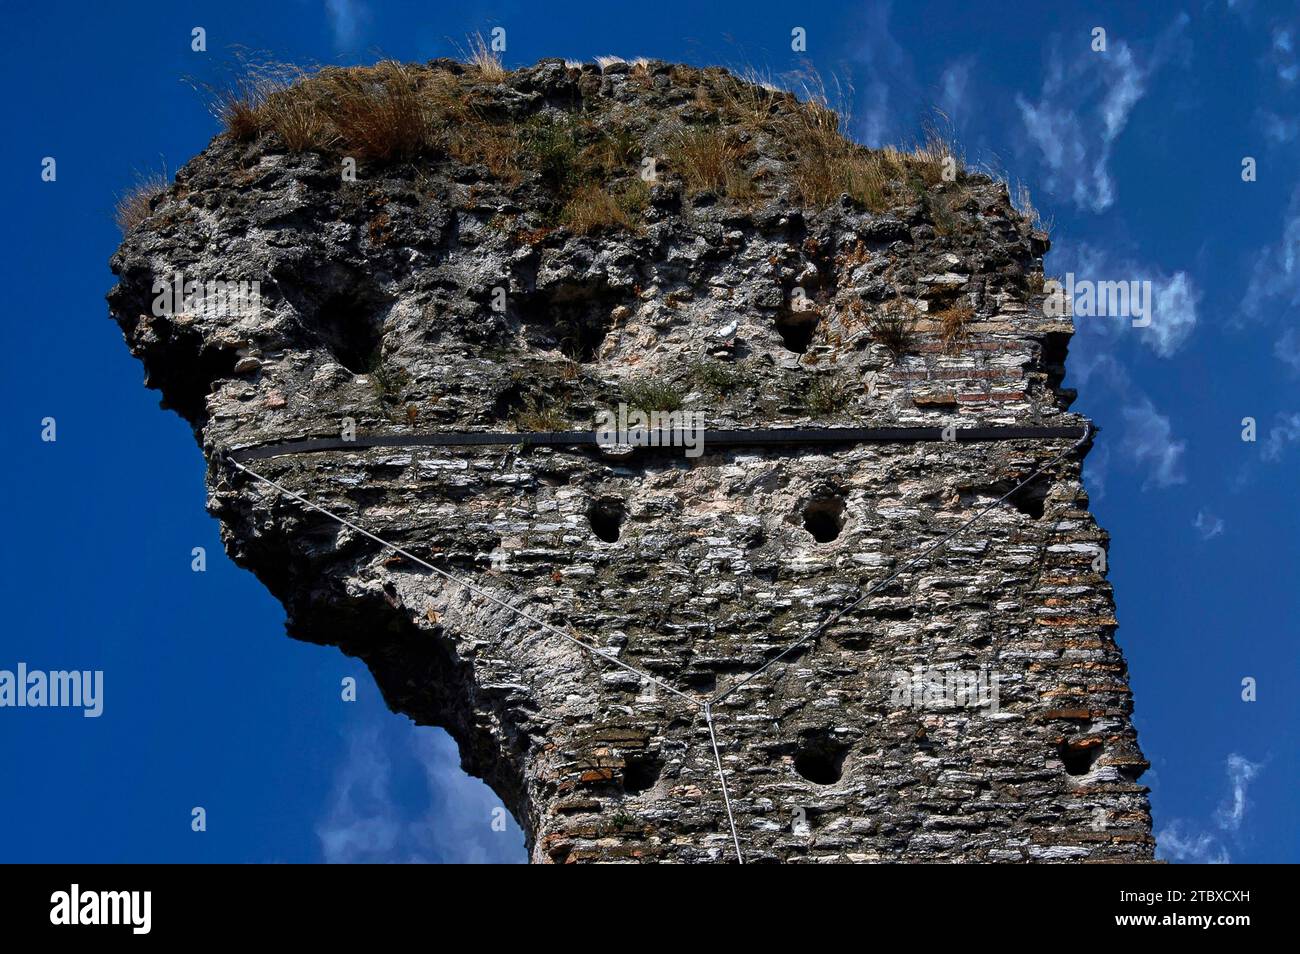 Der antike Turm ist mit einem Eisenband befestigt, das an einem Schlepper zwischen den Ruinen der Grotte di Catullo befestigt ist, einer römischen Villa in Sirmione auf der Halbinsel Sirmio, einer Landzunge am südlichen Ende des Gardasees in der Lombardei, Italien Stockfoto